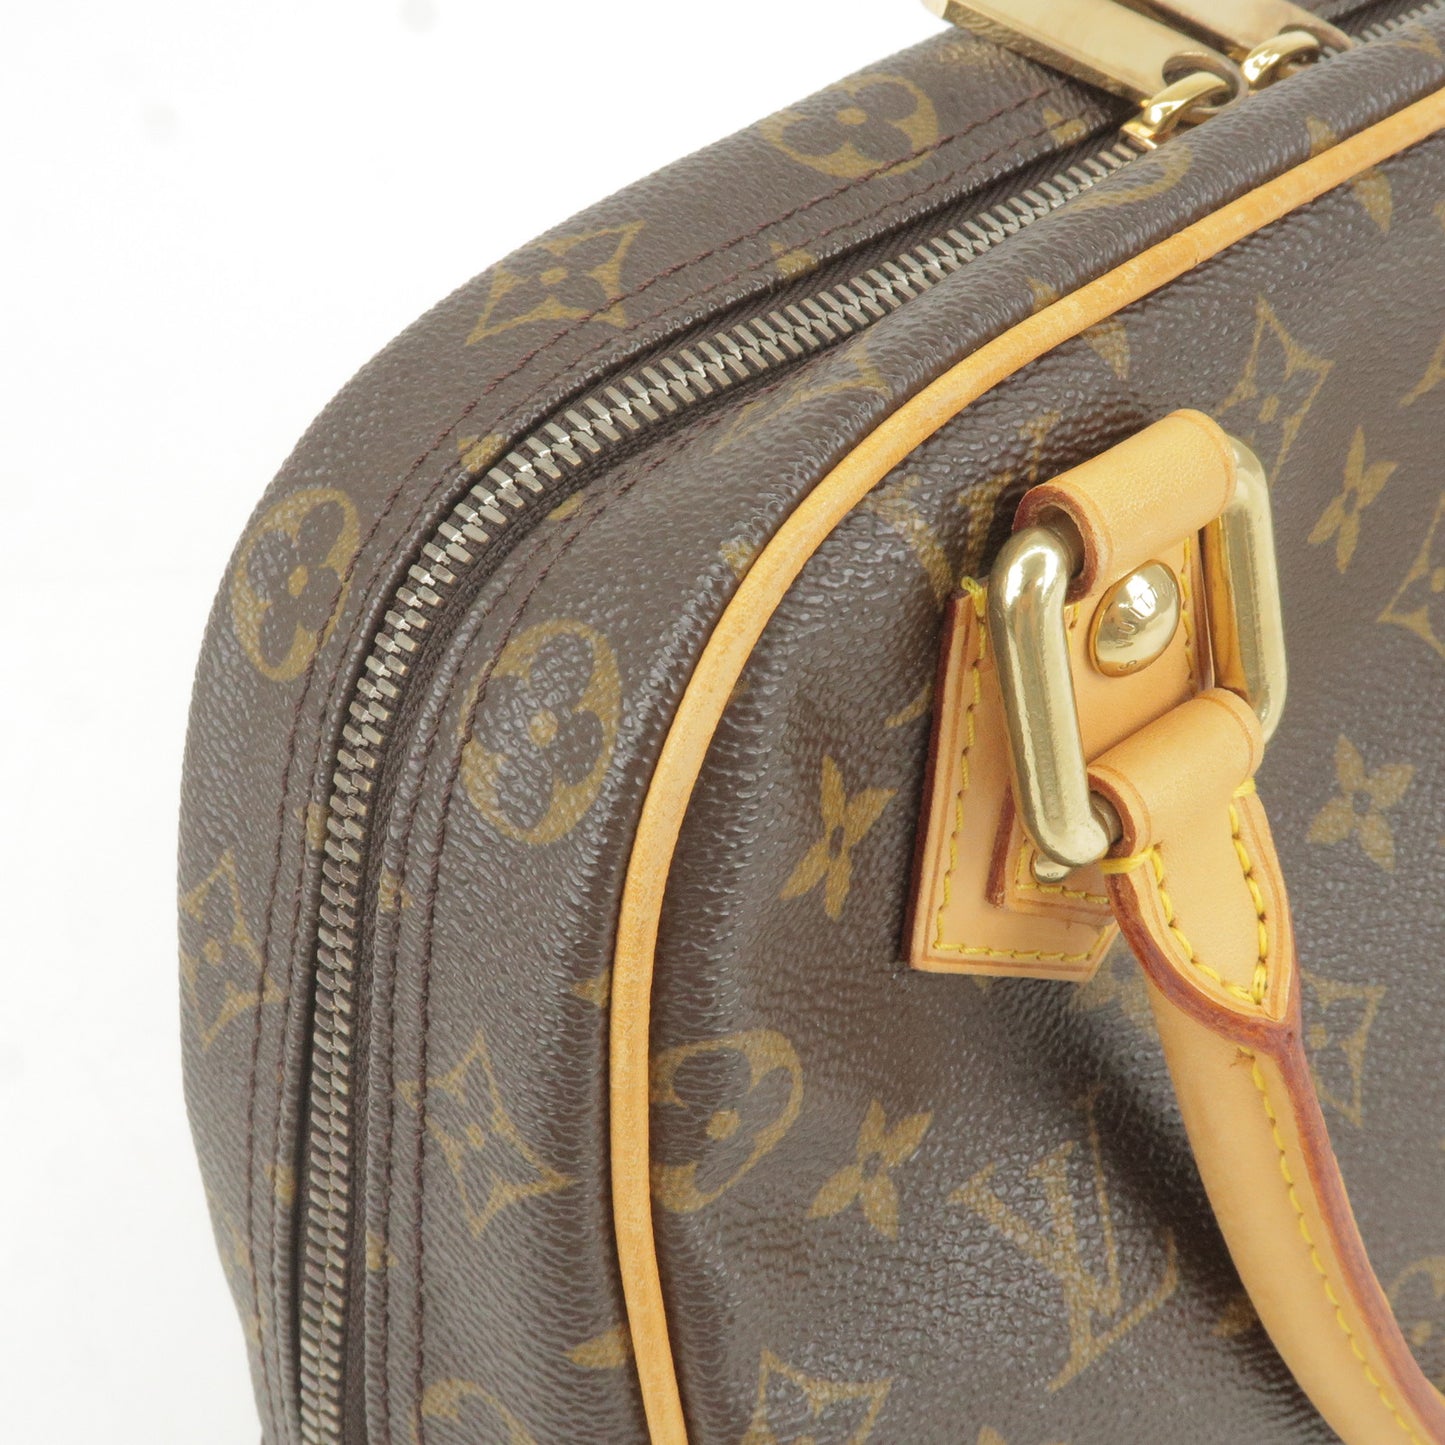 Louis Vuitton Monogram Manhattan PM Hand Bag M40026